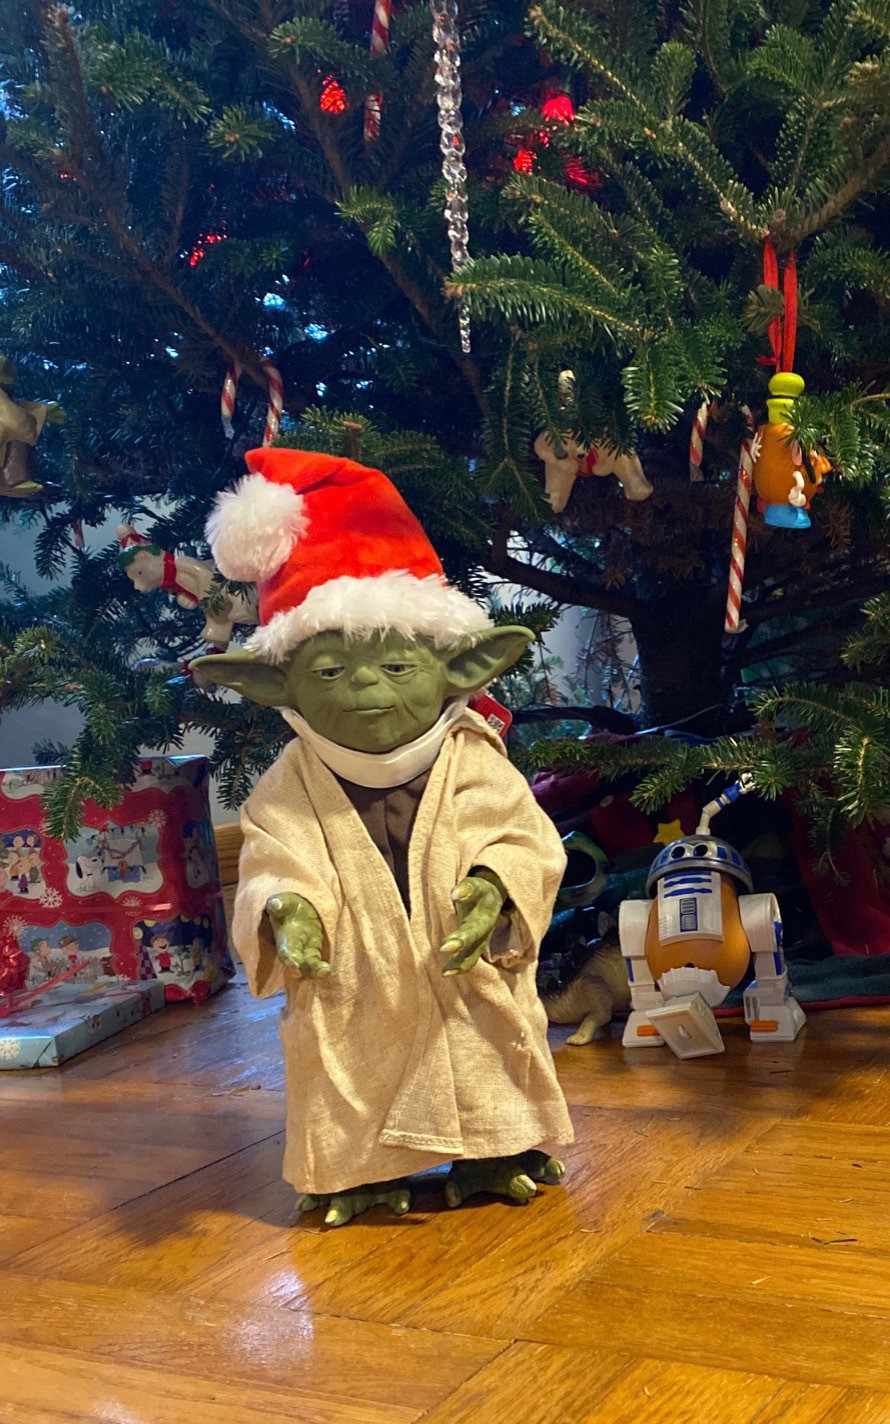 Life size Yoda wearing a Santa hat.